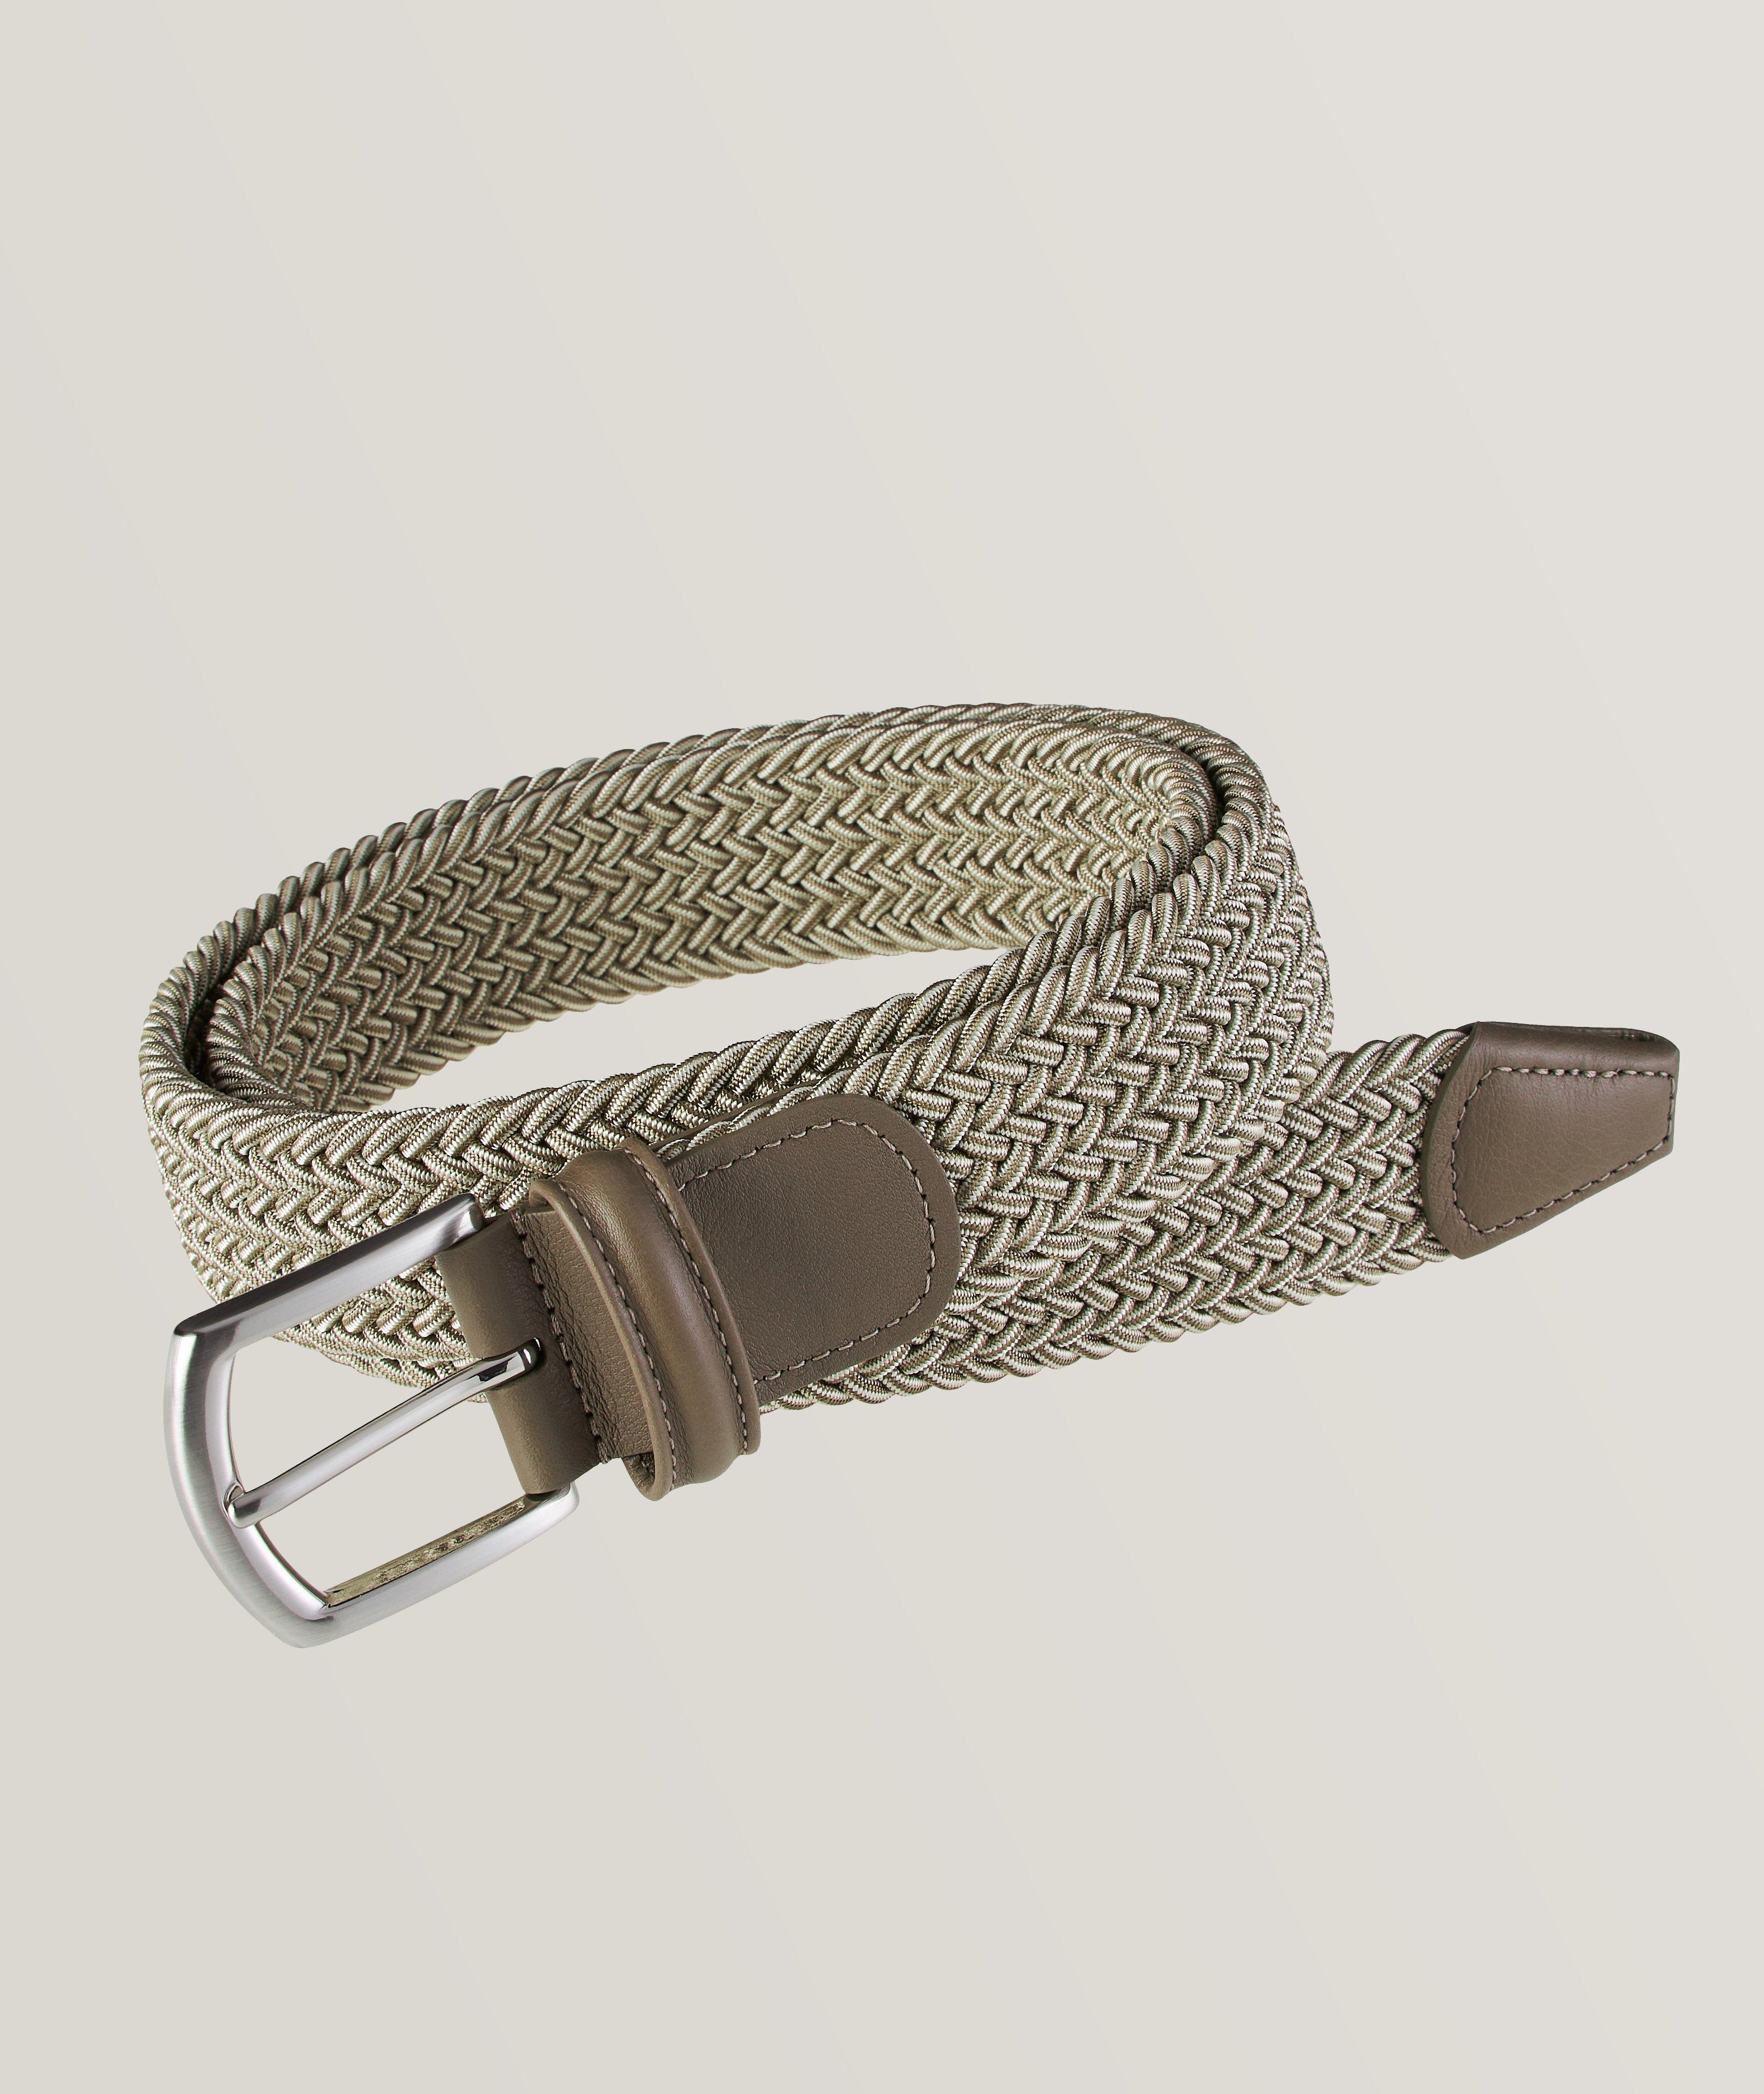 Anu Khanna Designs - Introducing fancy waist belts 🔥 Order yours